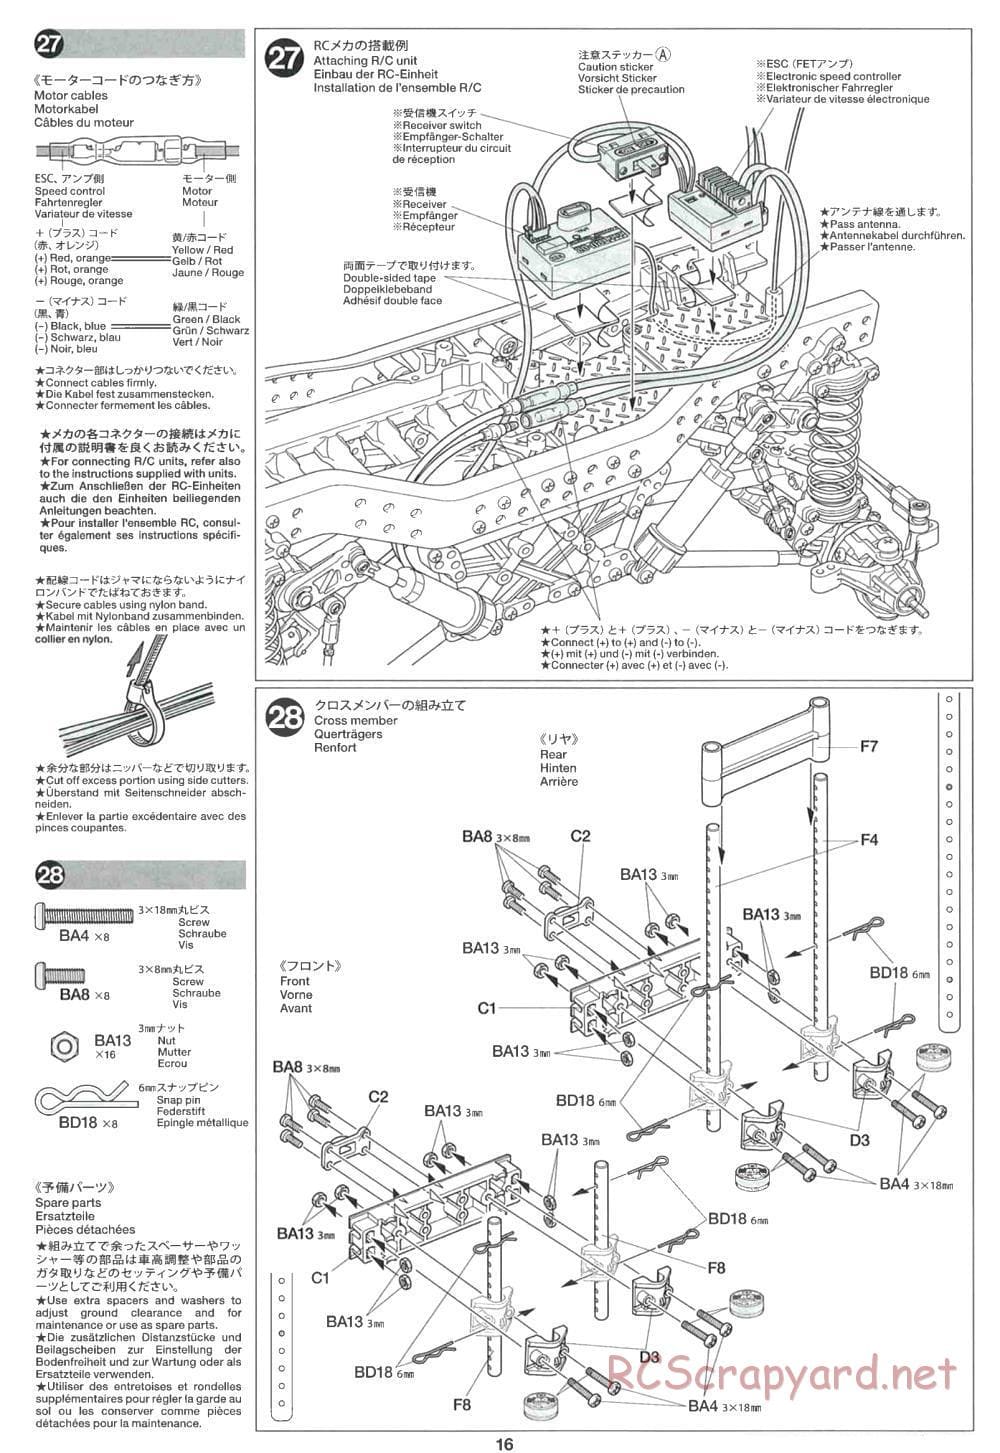 Tamiya - CR-01 Chassis - Manual - Page 16